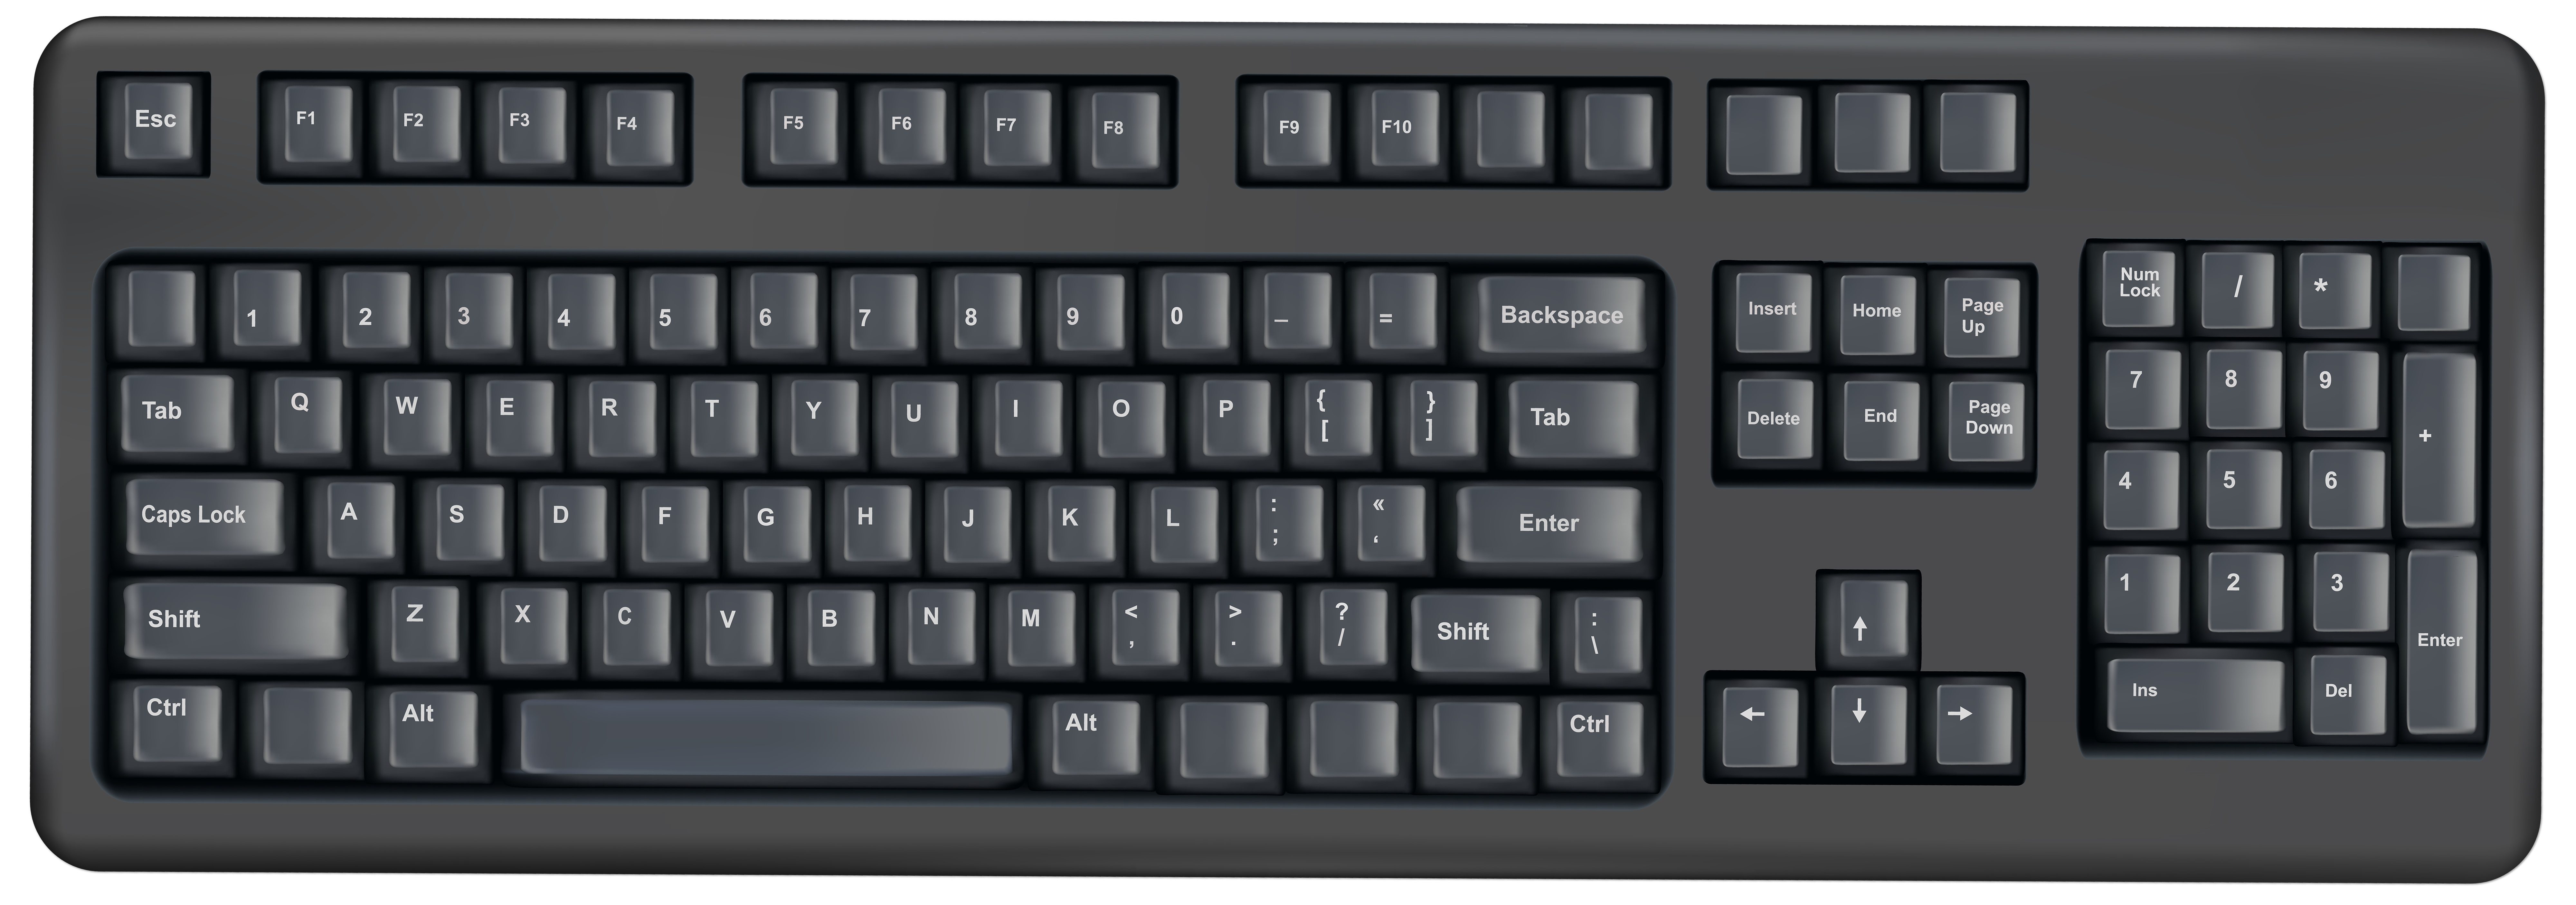 Keyboard Transparent PNG Clip Art Image.